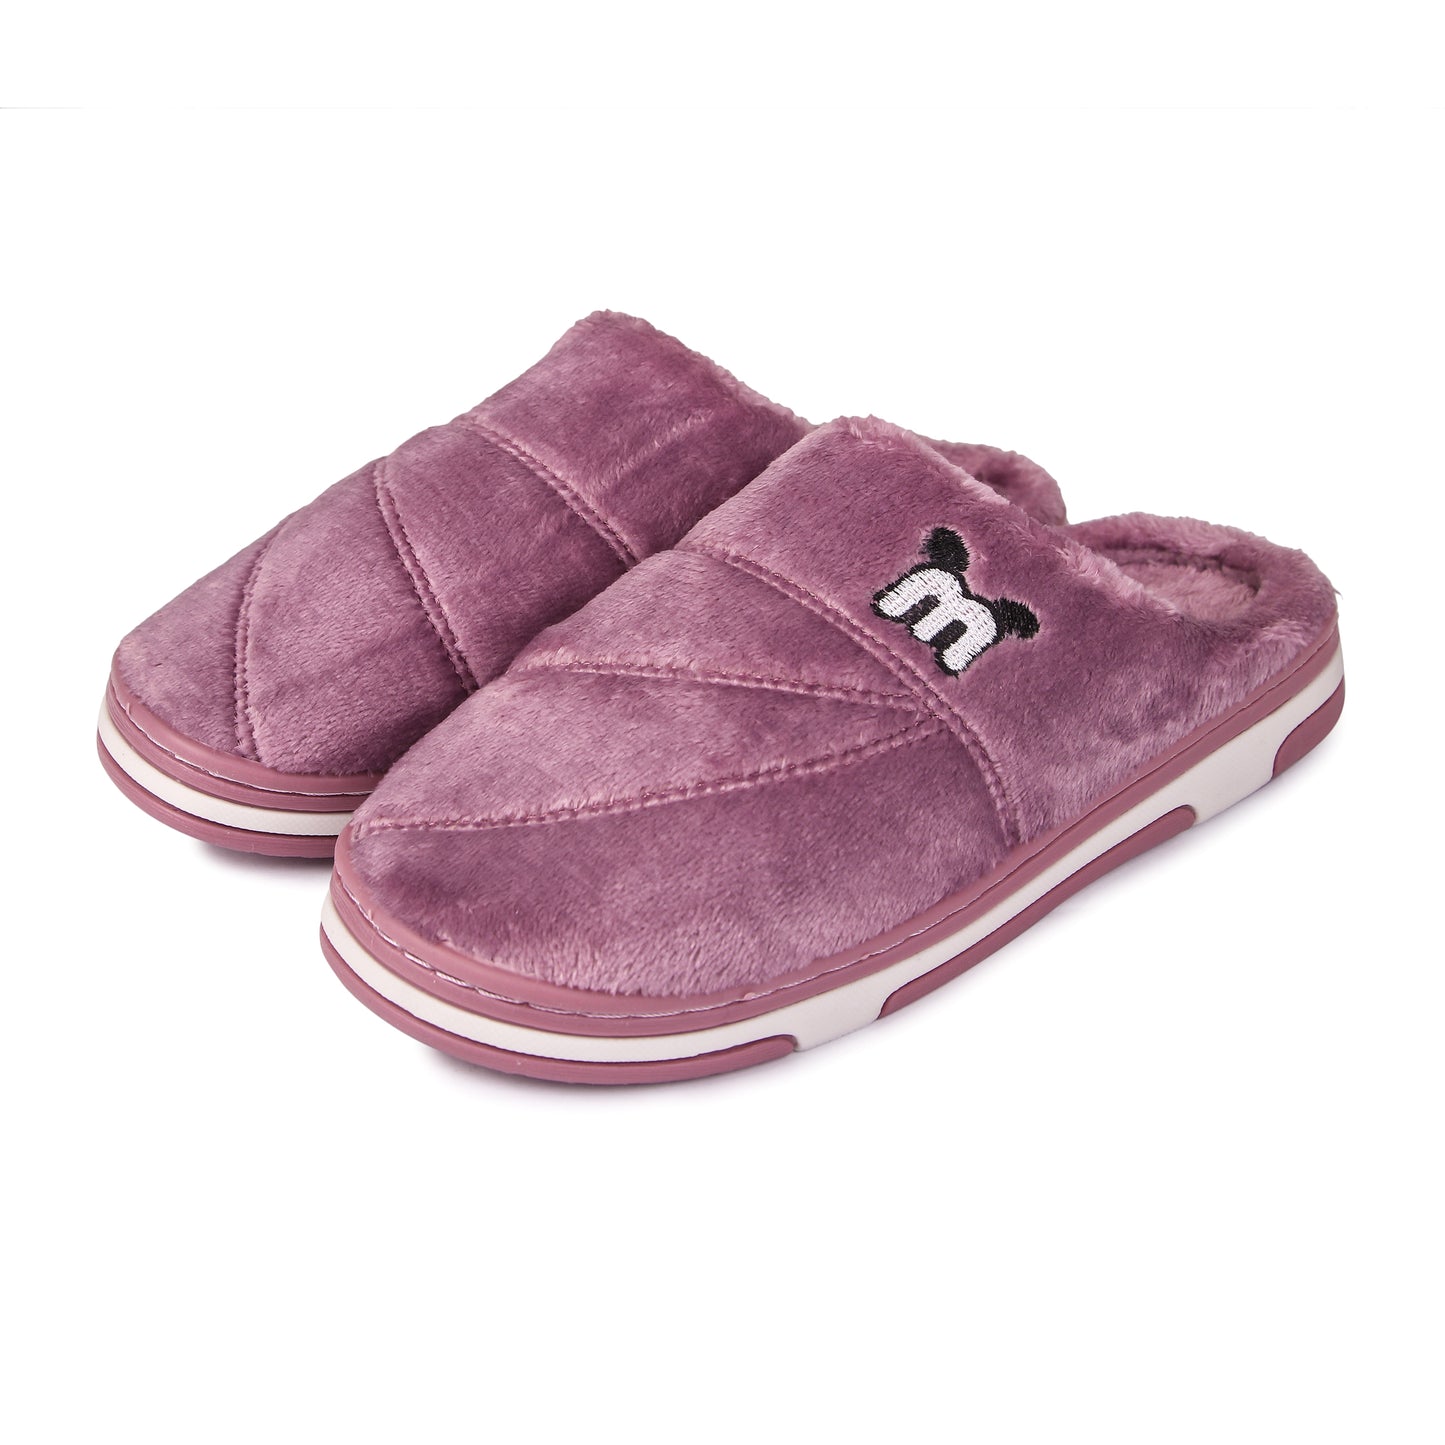 Brauch Women's Purple Cute Ear Warm Winter Slippers…